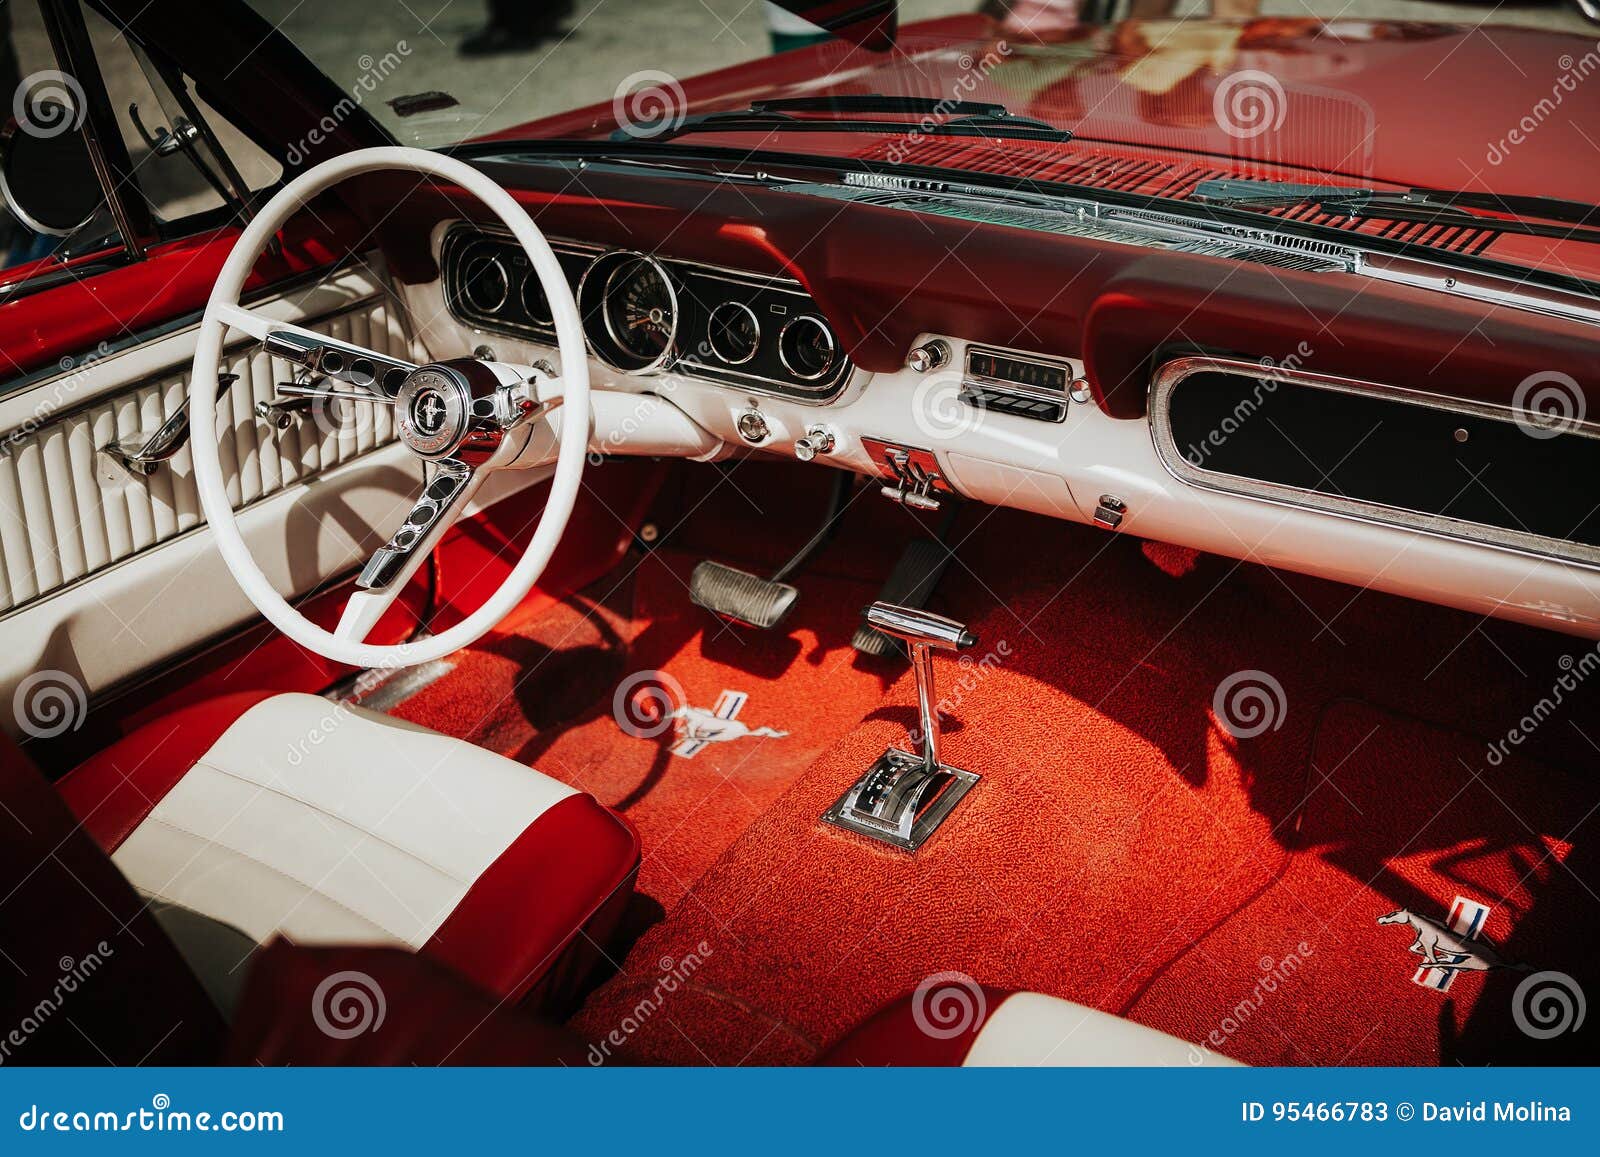 Malaga Spain July 30 2016 1966 Ford Mustang Interior